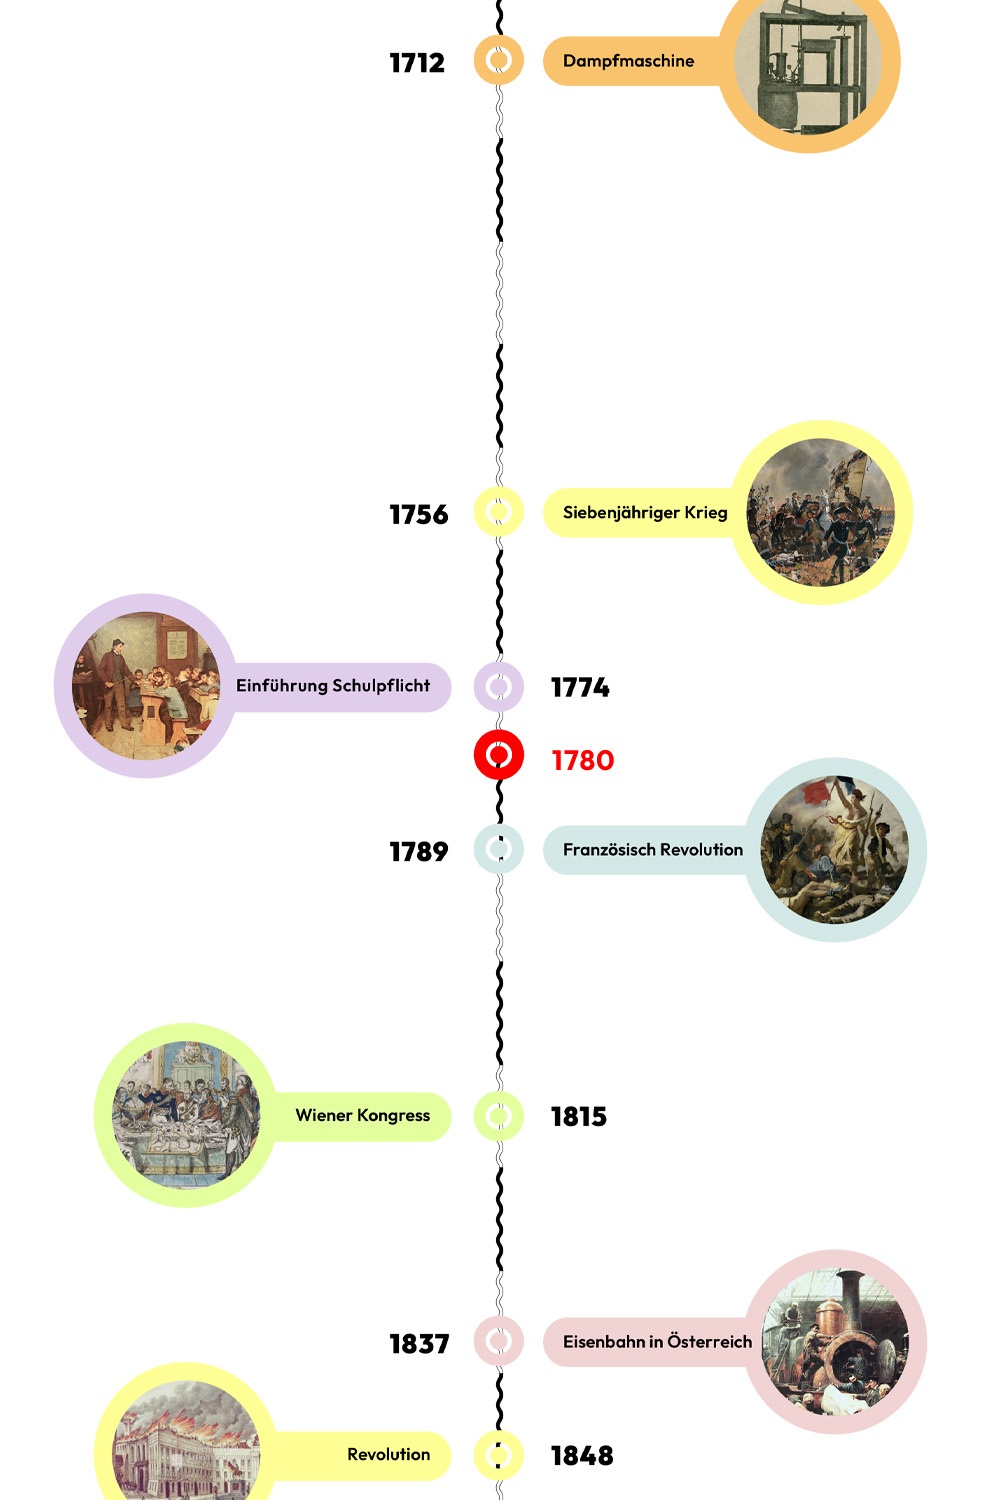 Zeitstrahl mit historischen Ereignissen - 1780 ist hervorgehoben. © wasbishergeschah.at